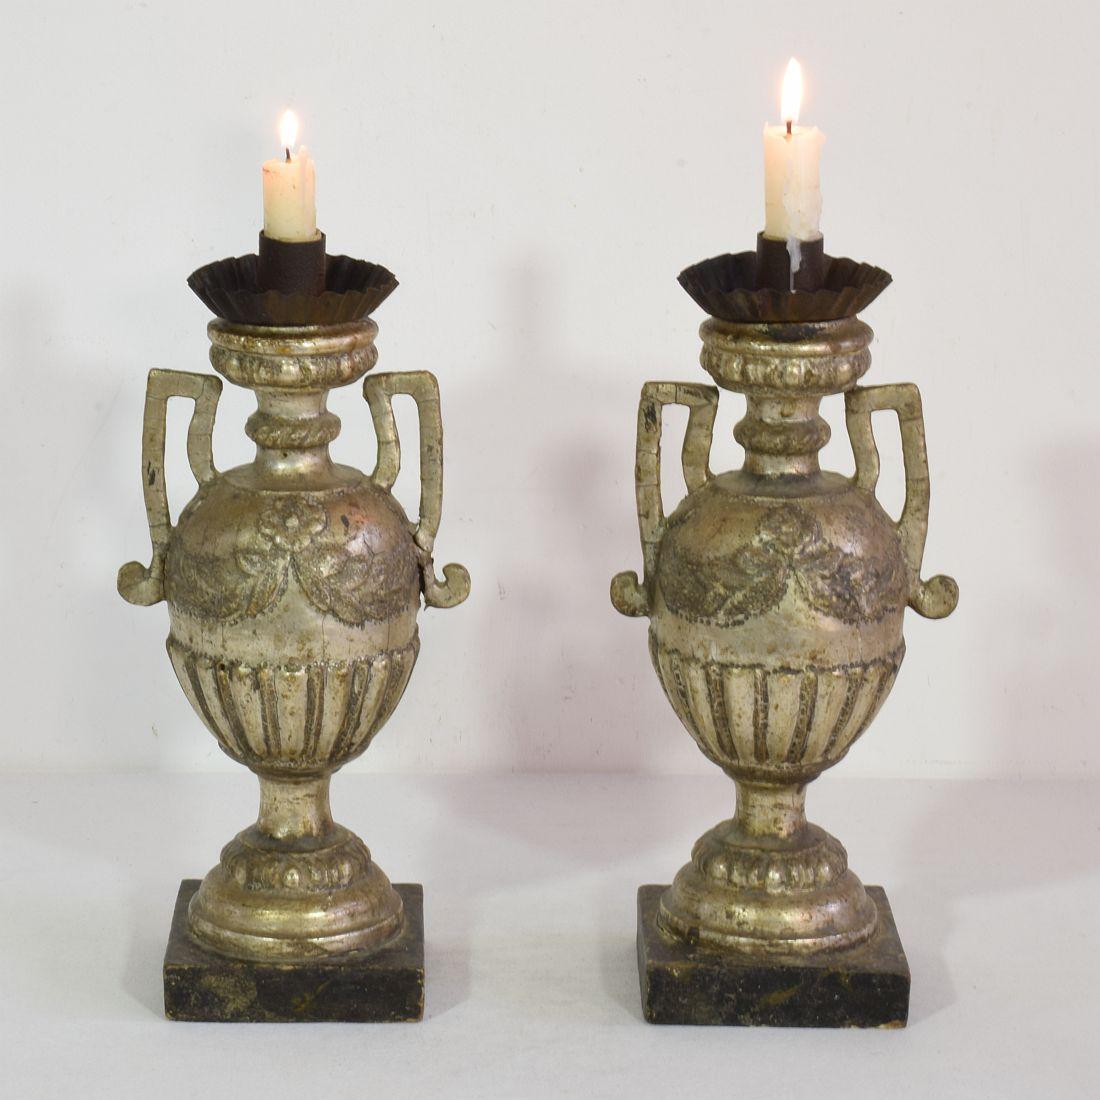 Großartiges Paar neoklassischer Kerzenhalter mit originalem Silber.
Sie sind aus Holz und Eisen gefertigt.
Italien, ca. 1770-1800.
Verwittert und kleine Schäden.